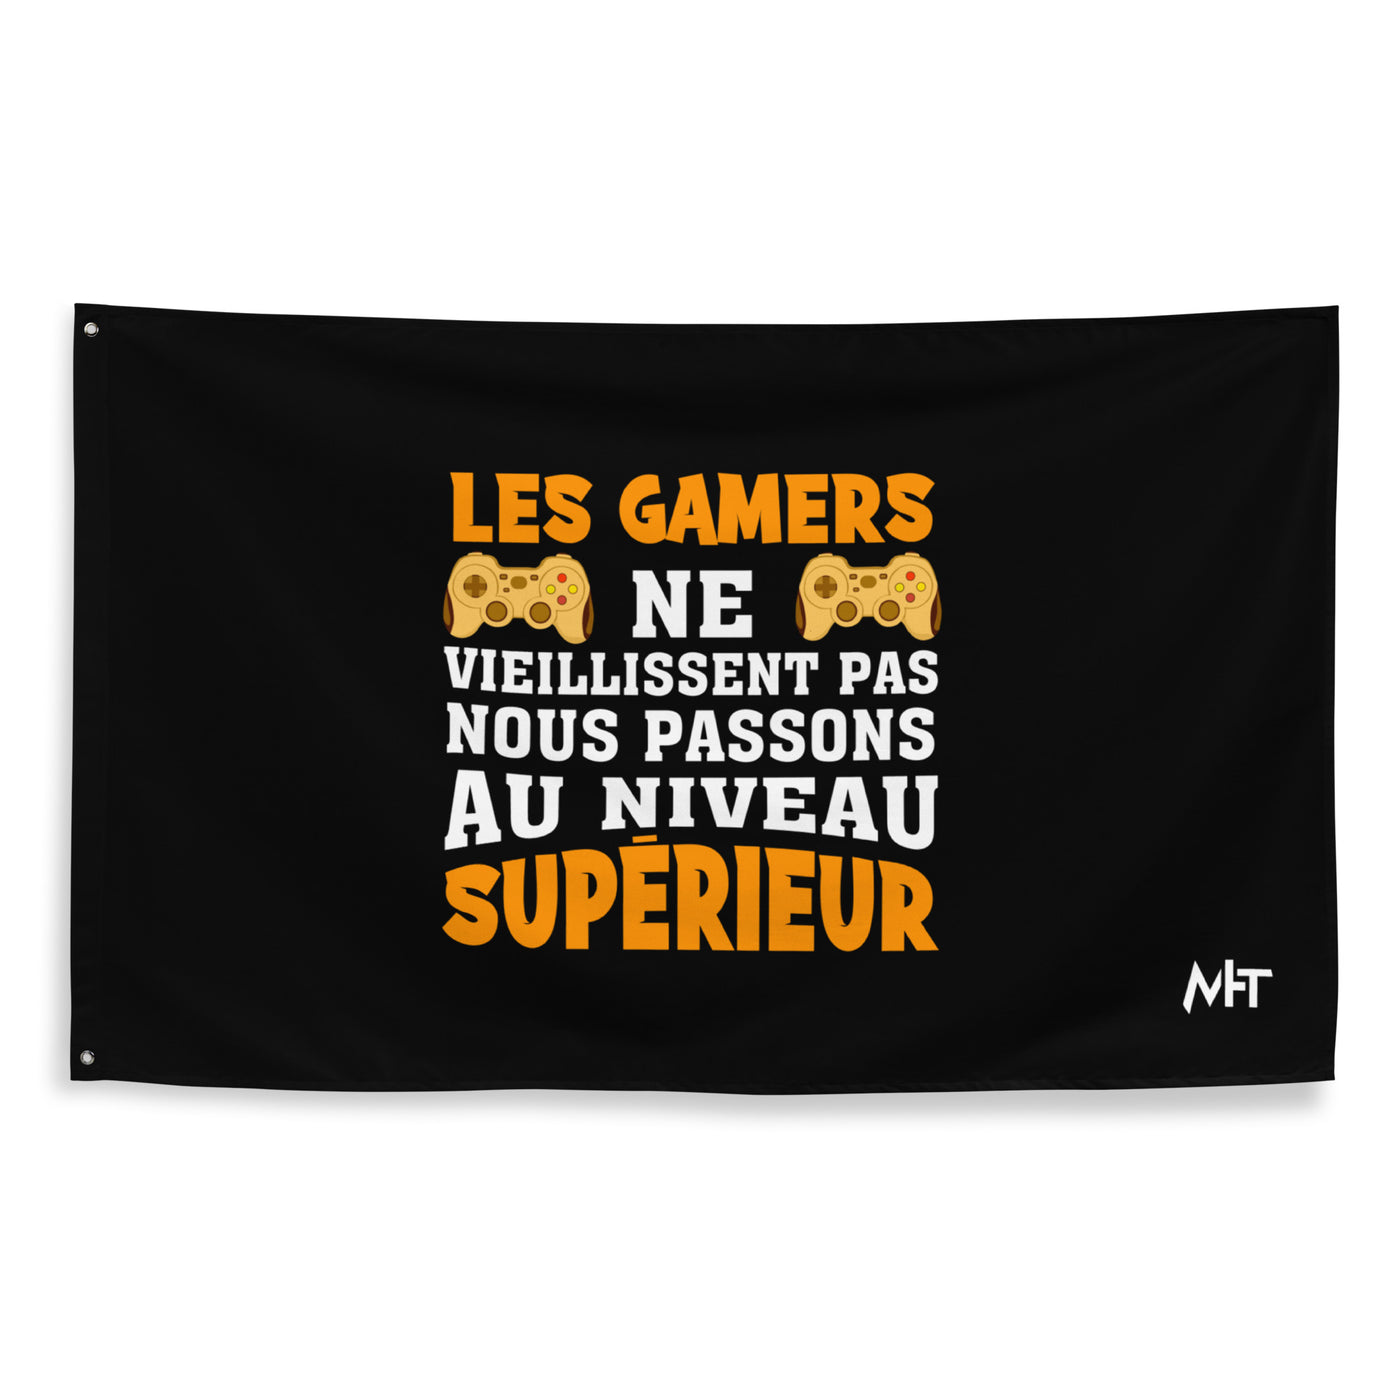 LES GAMERS PNE VIEILLISSENT PAS NOUS PASSONS AU NIVEAU SUPERIEUR - Flag